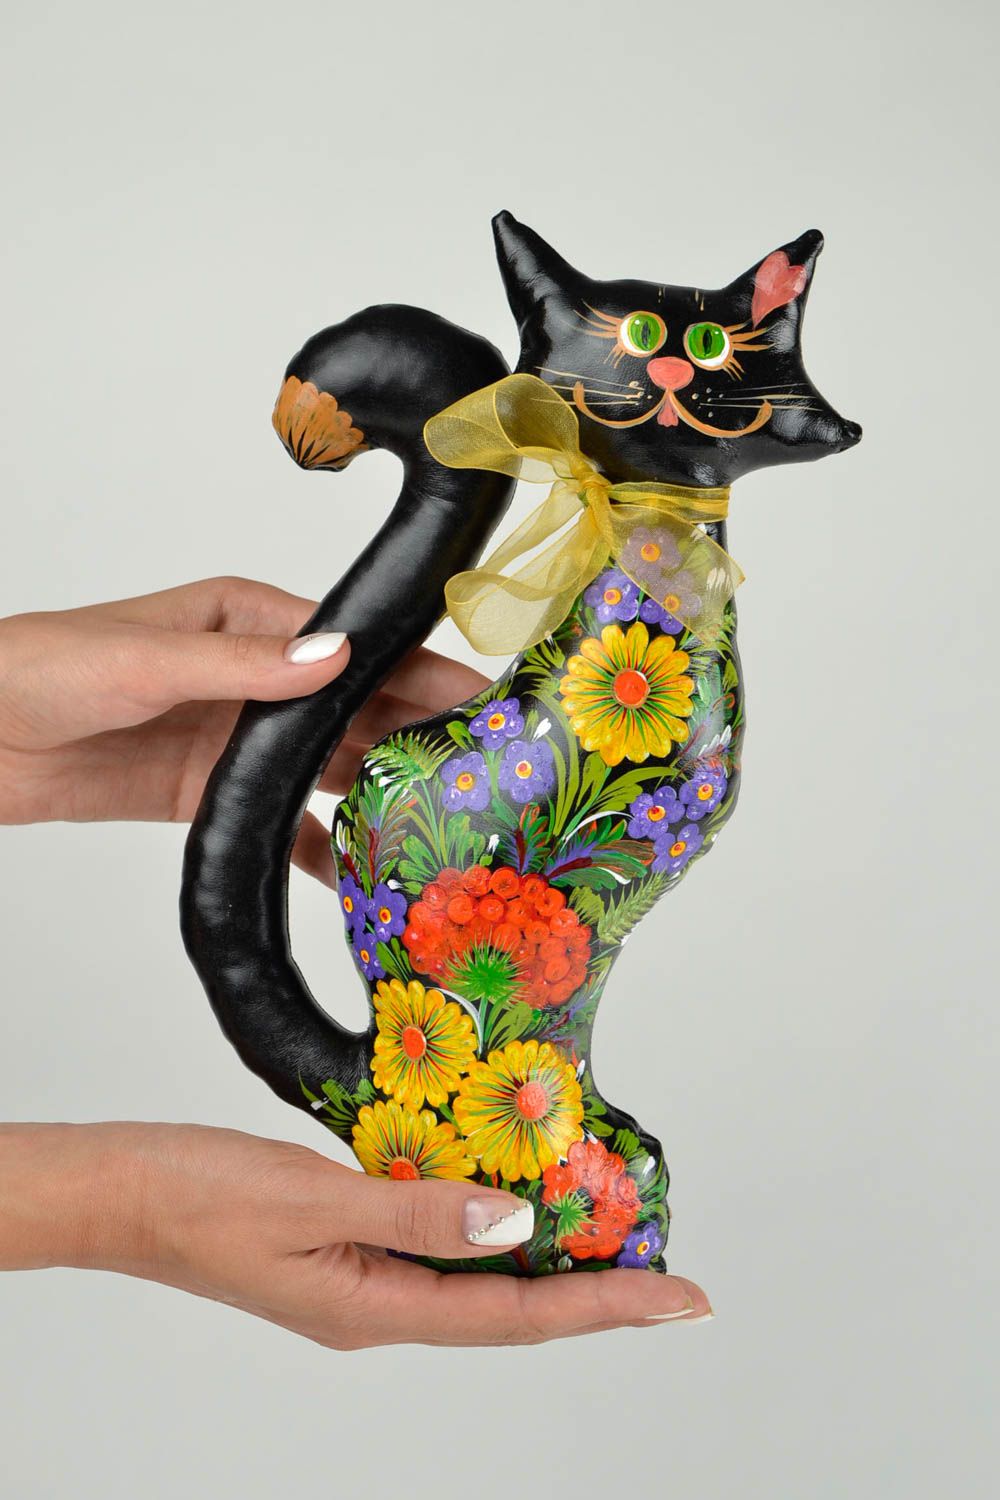 Игрушка ручной работы игрушка кот оригинальная игрушка черная расписная фото 2